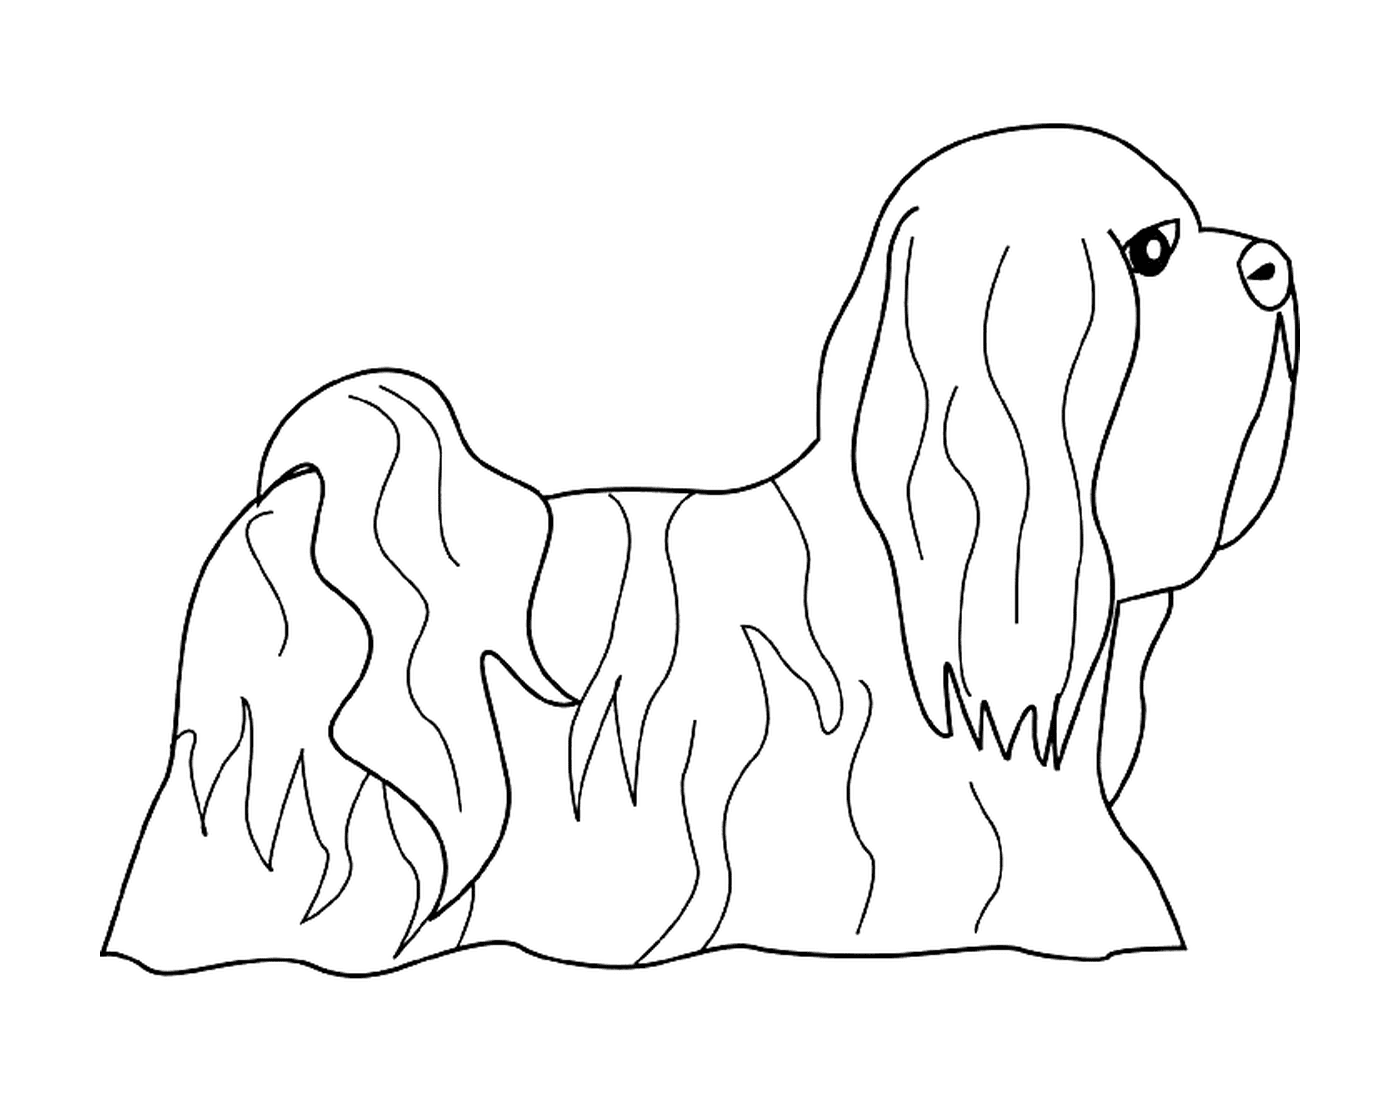  Ein Hund lhasa apso 